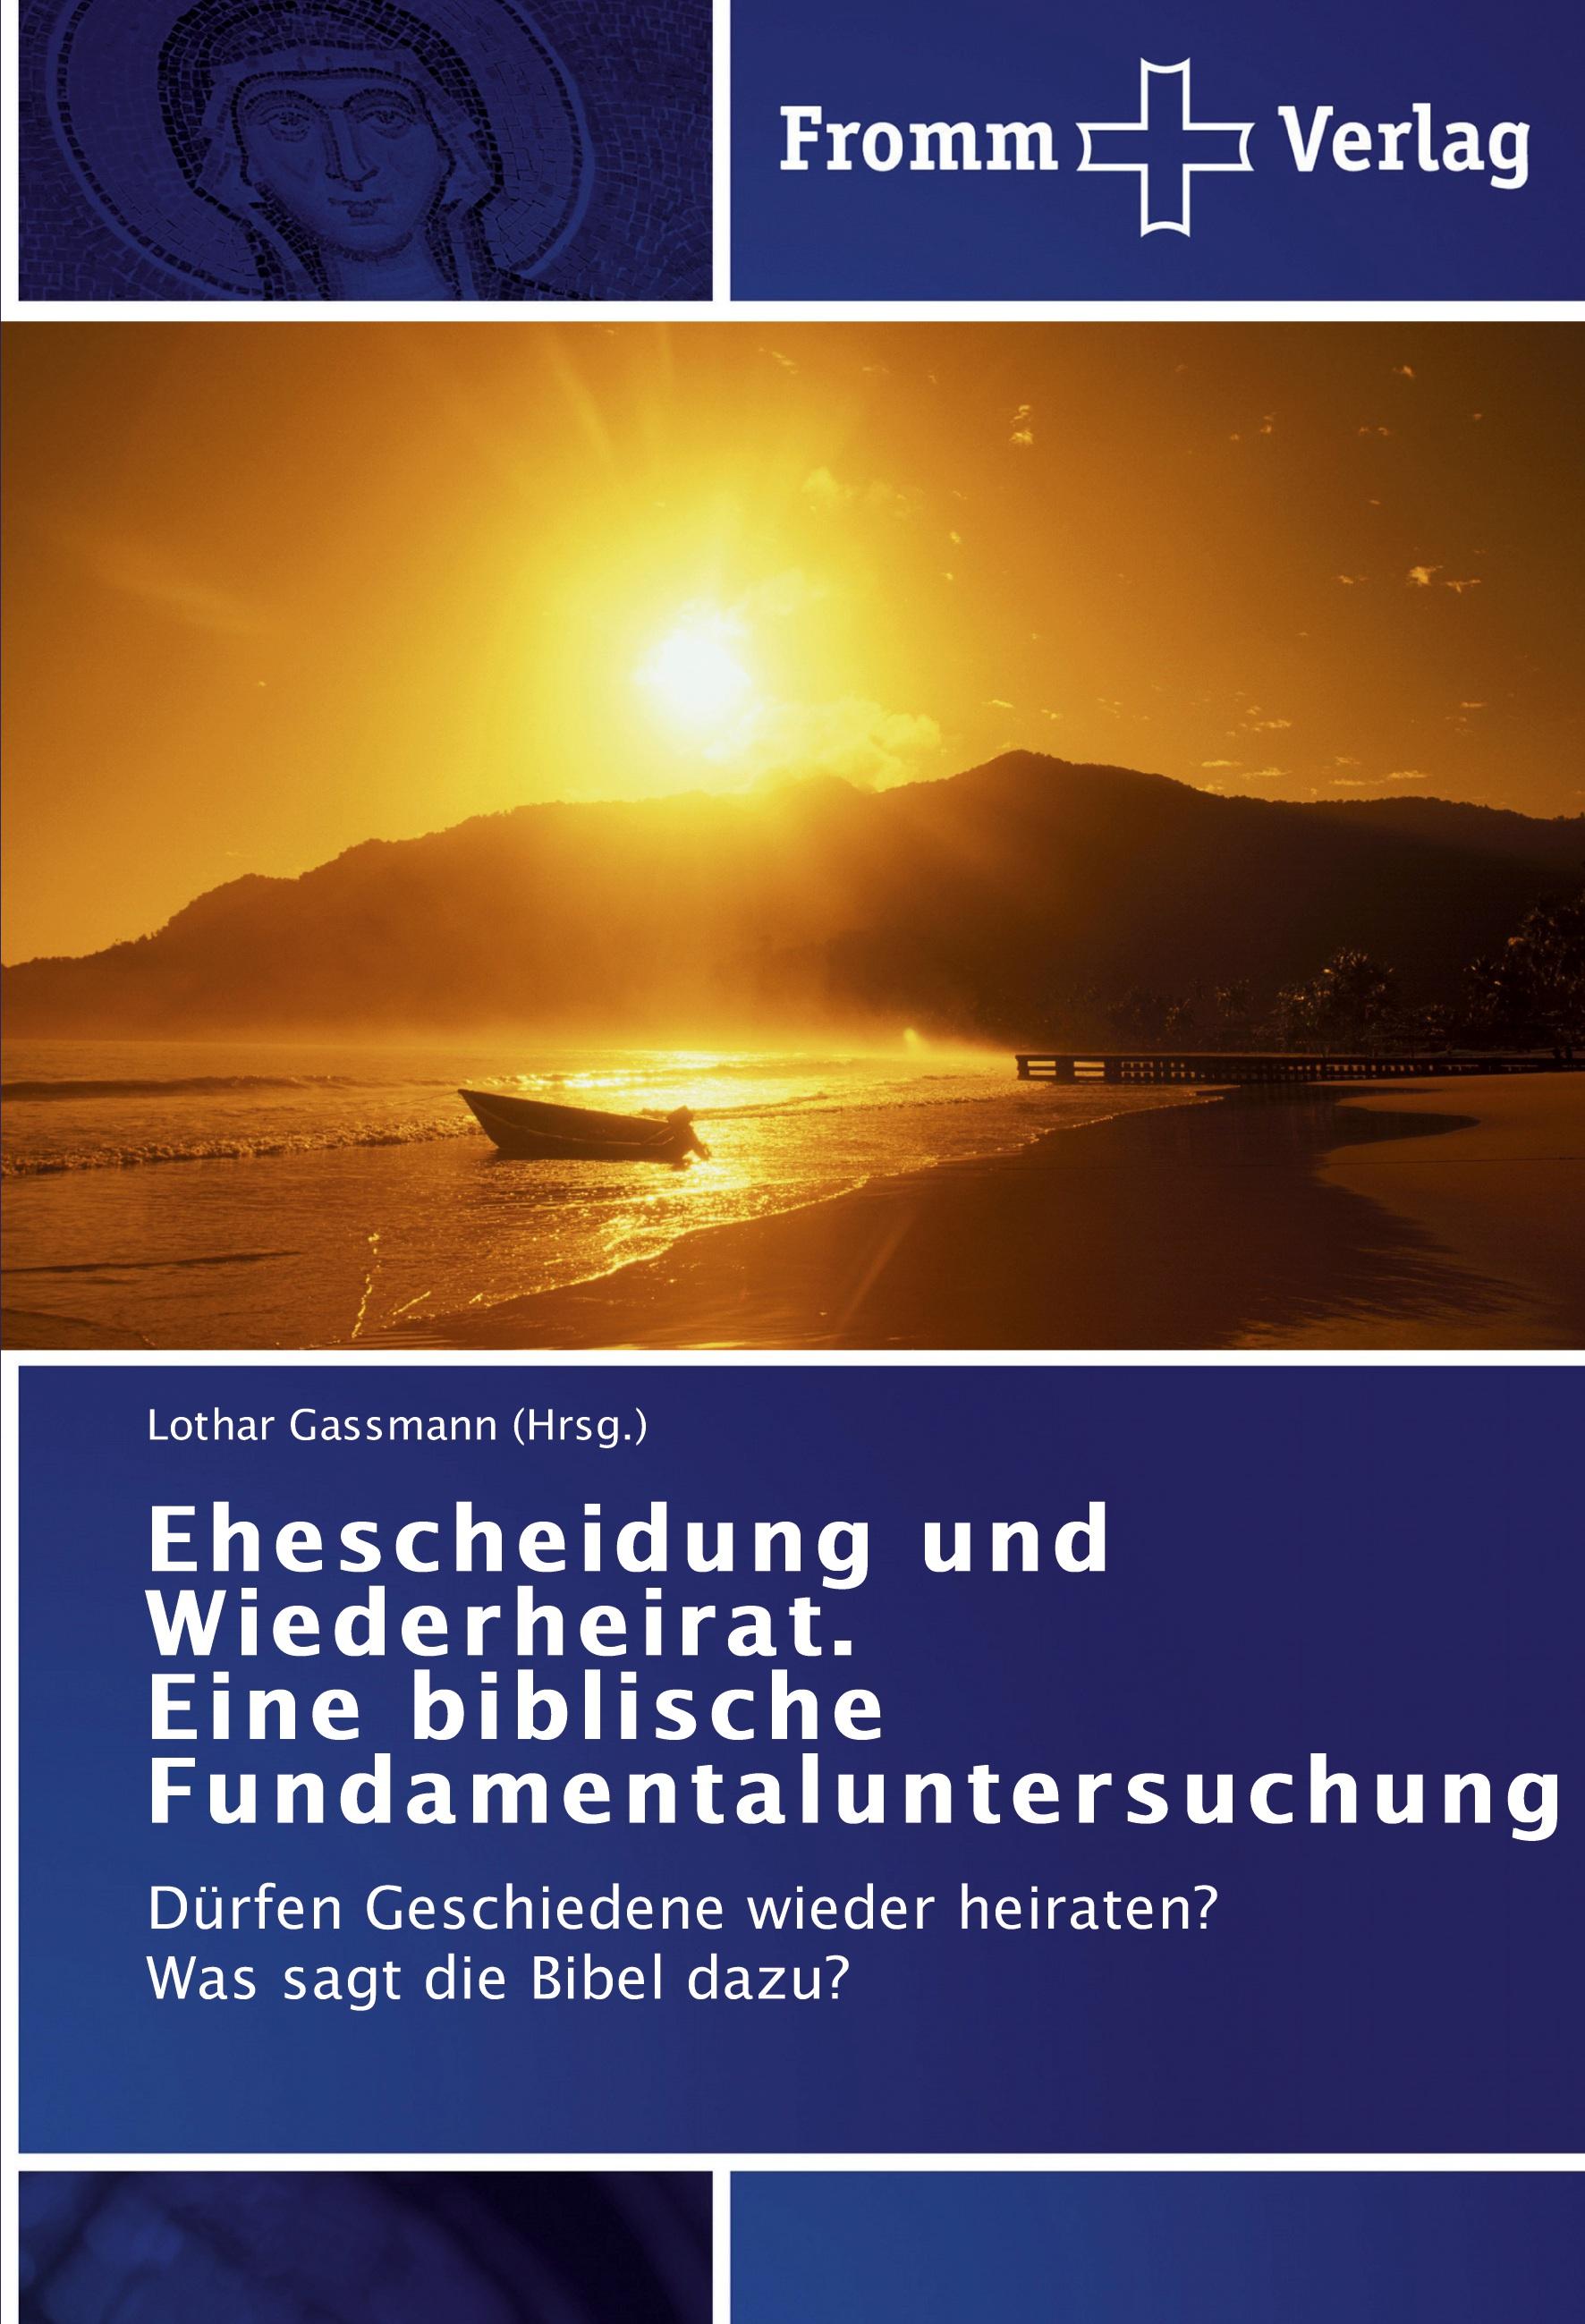 Ehescheidung und Wiederheirat. Eine biblische Fundamentaluntersuchung - Lothar Gassmann (Hrsg.)